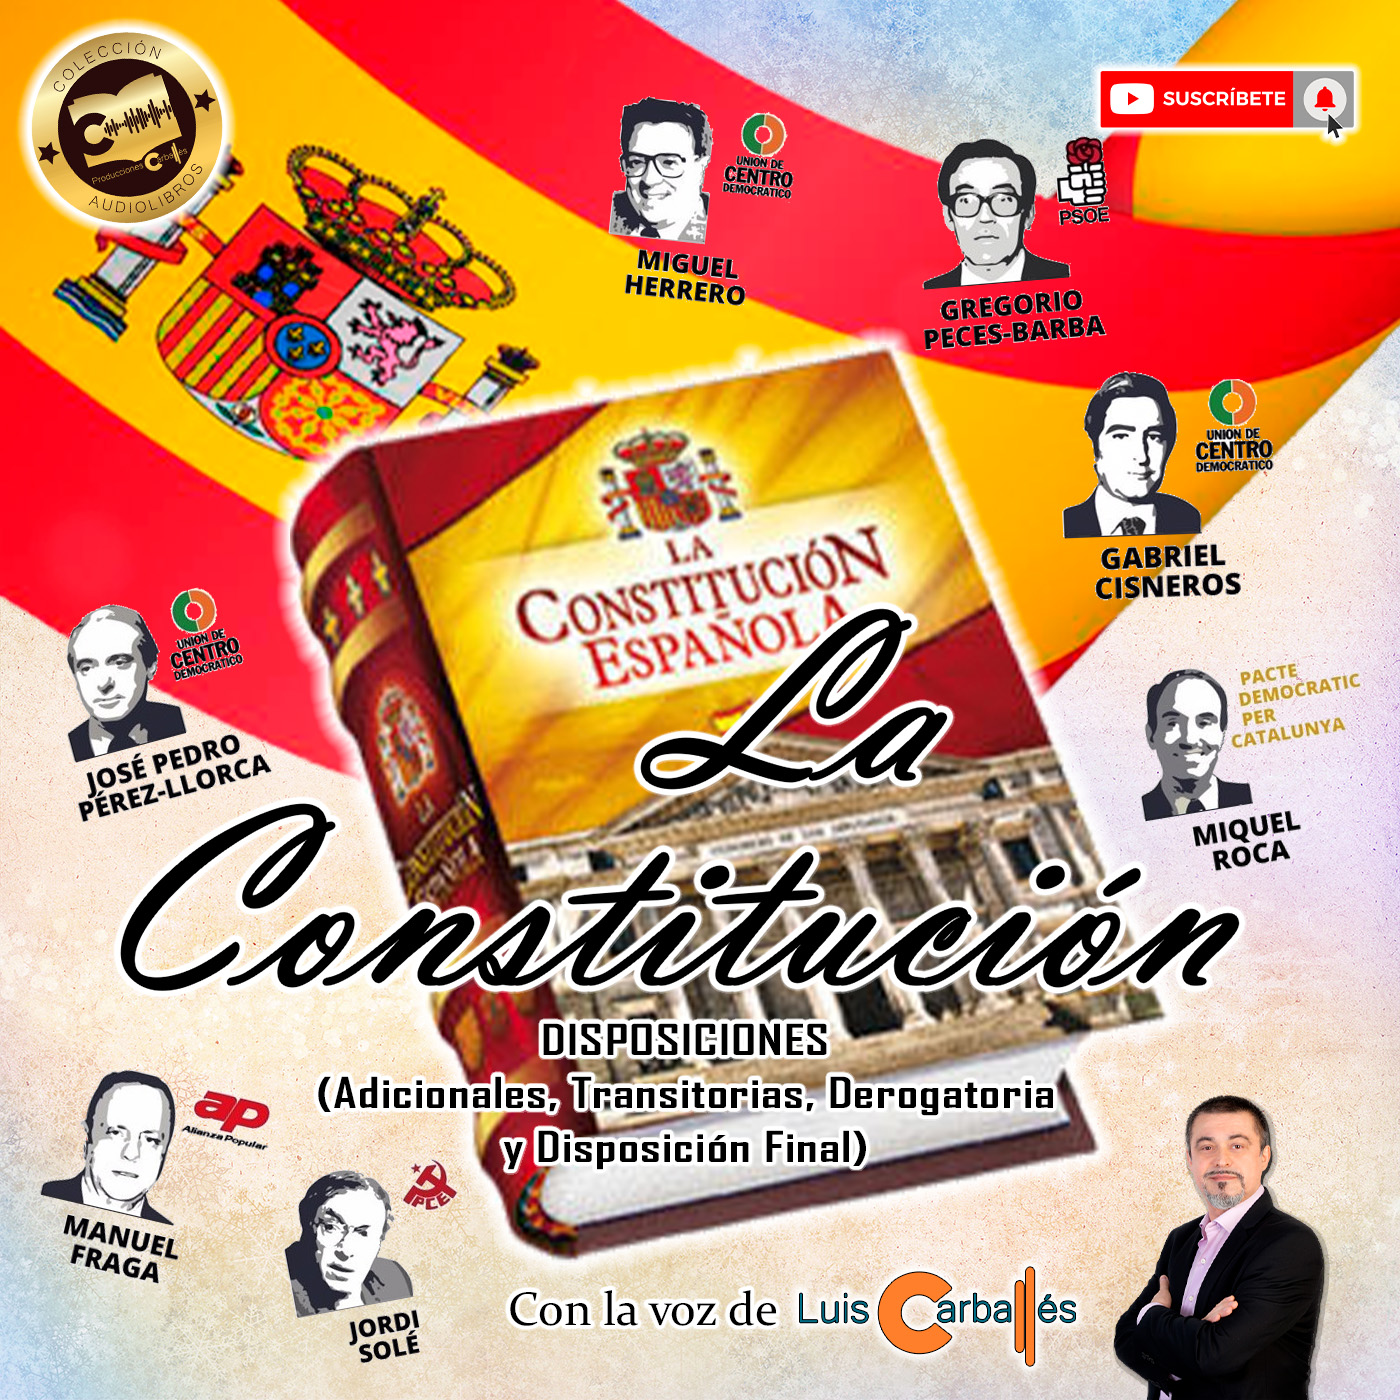 Constitución Española - Disposiciones | Disposiciones Adicionales, Disposiciones Transitorias, Disposición Derogatoria y Disposición Final